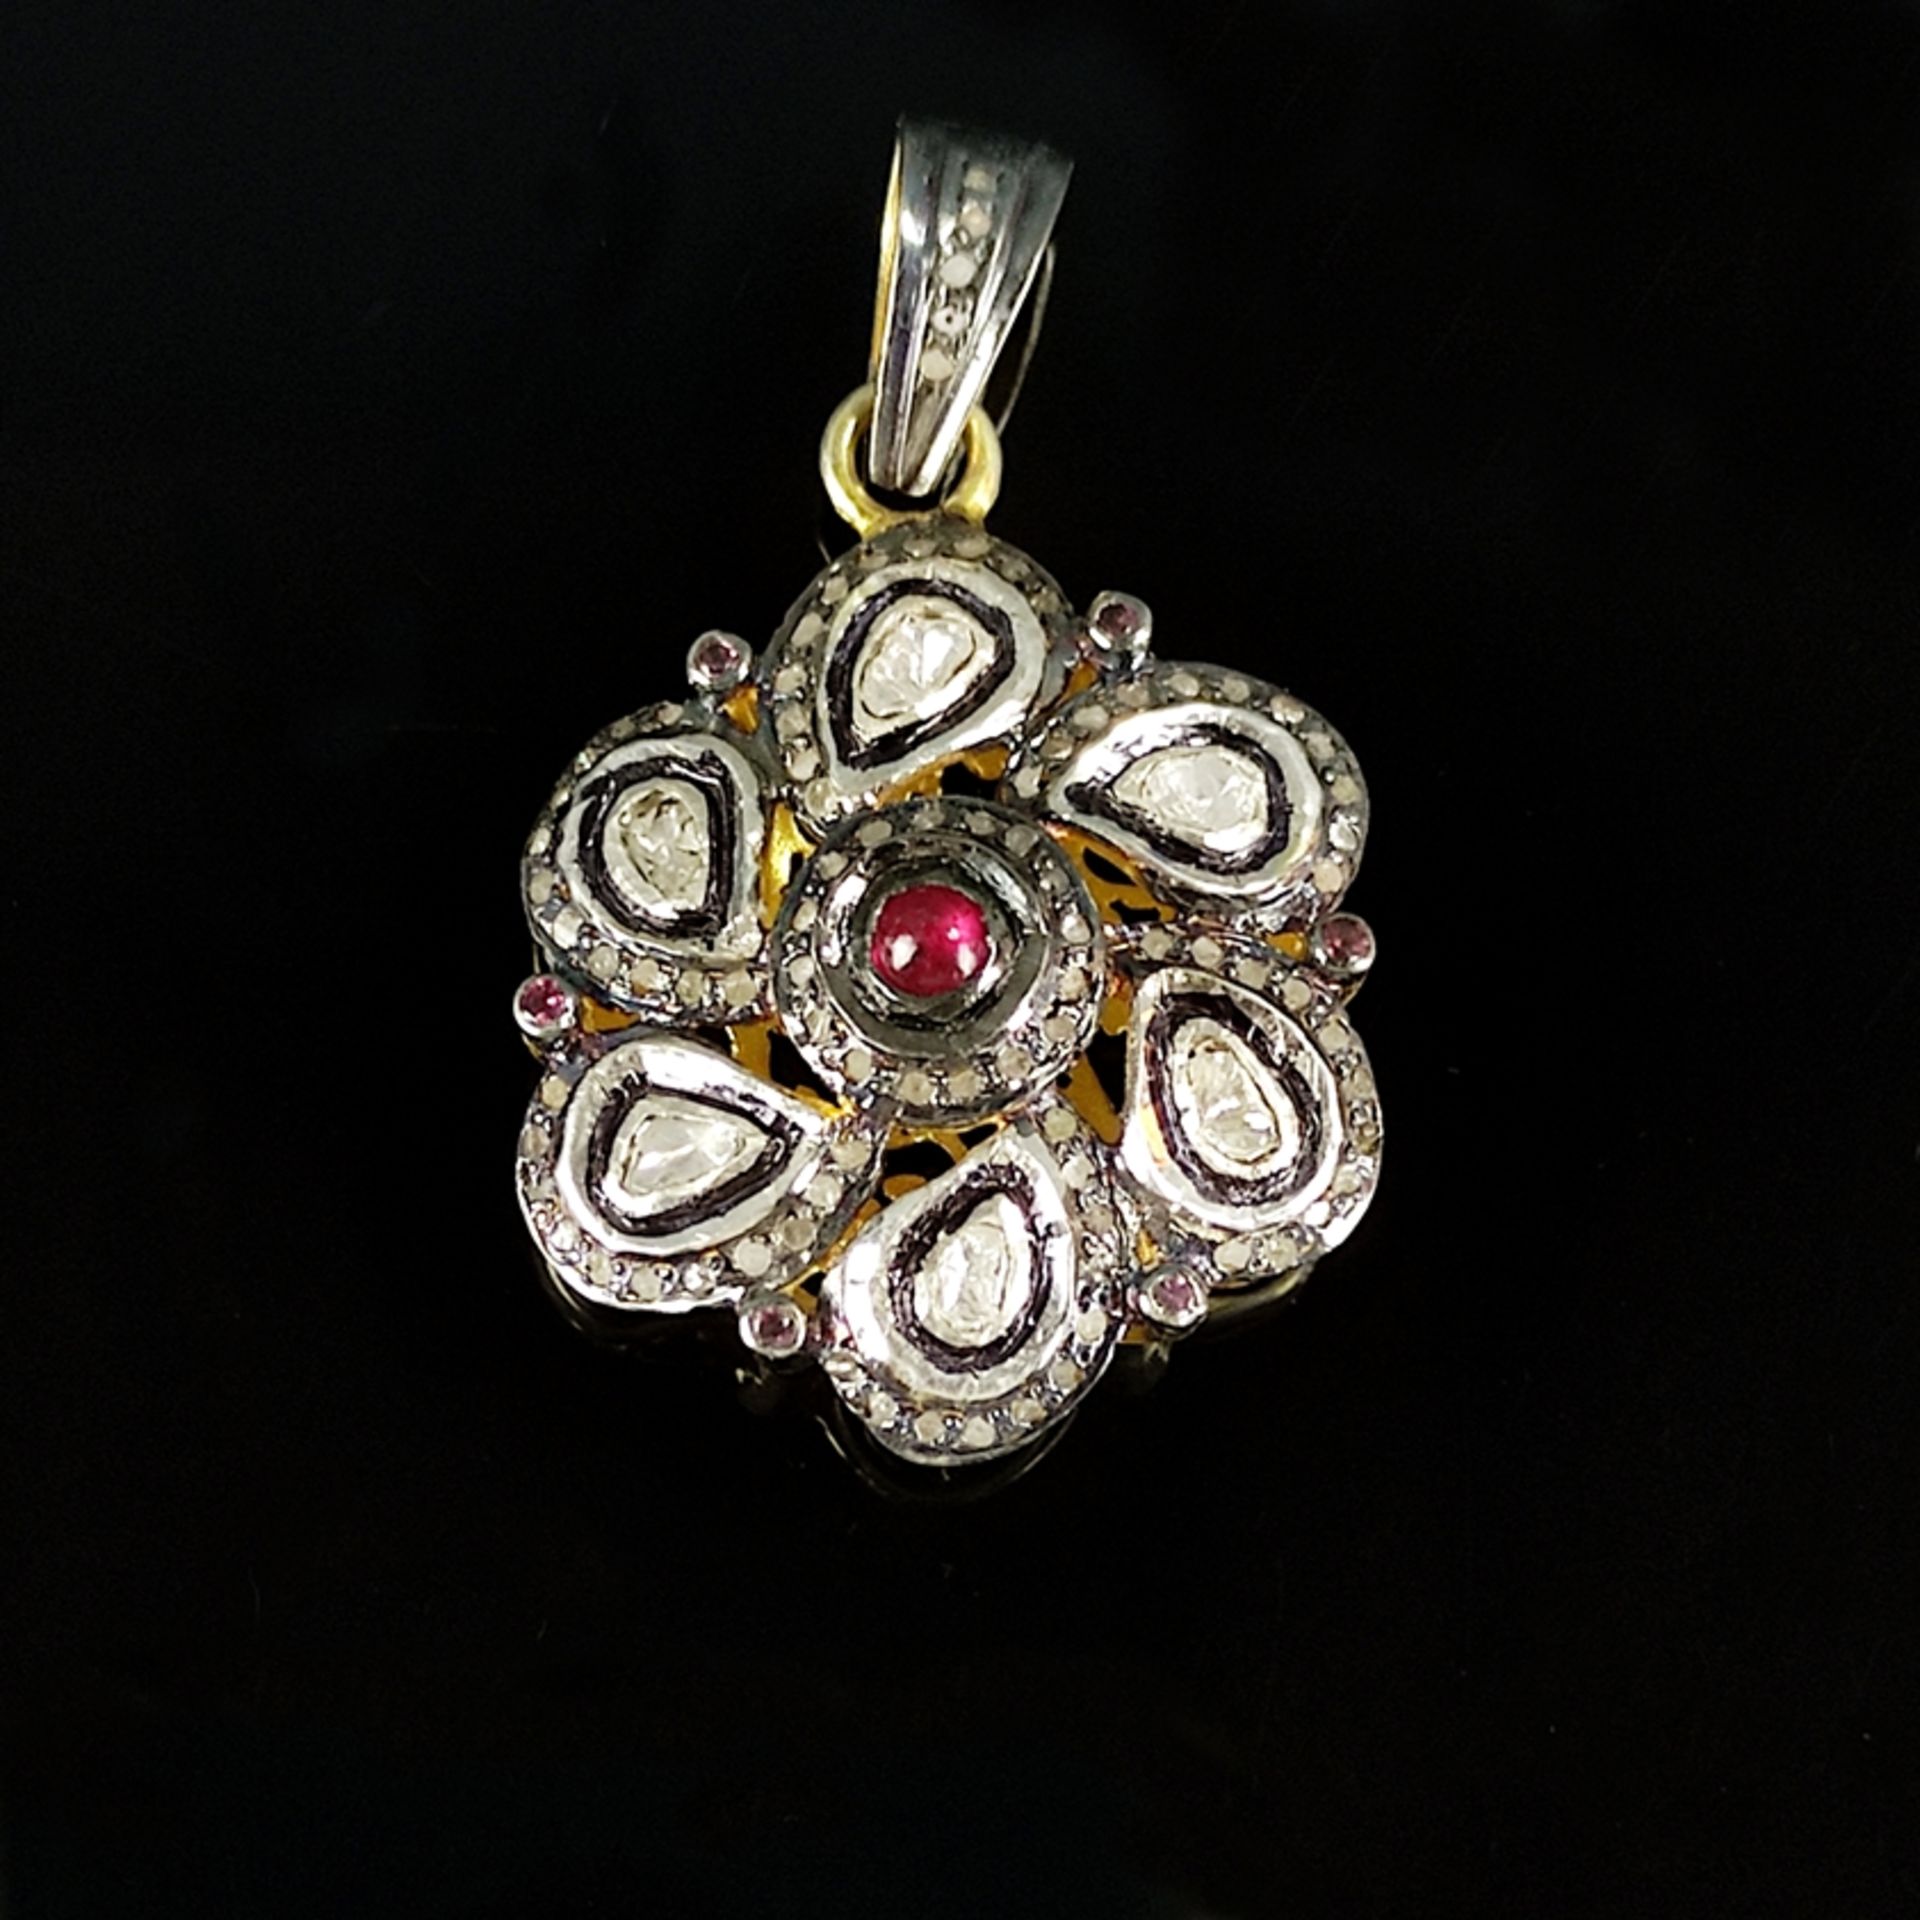 Diamant-Rubin-Anhänger, Silber 925 in 585/14K Gelbgold vergoldet, 11,5g, Blüten-Form besetzt mit ge